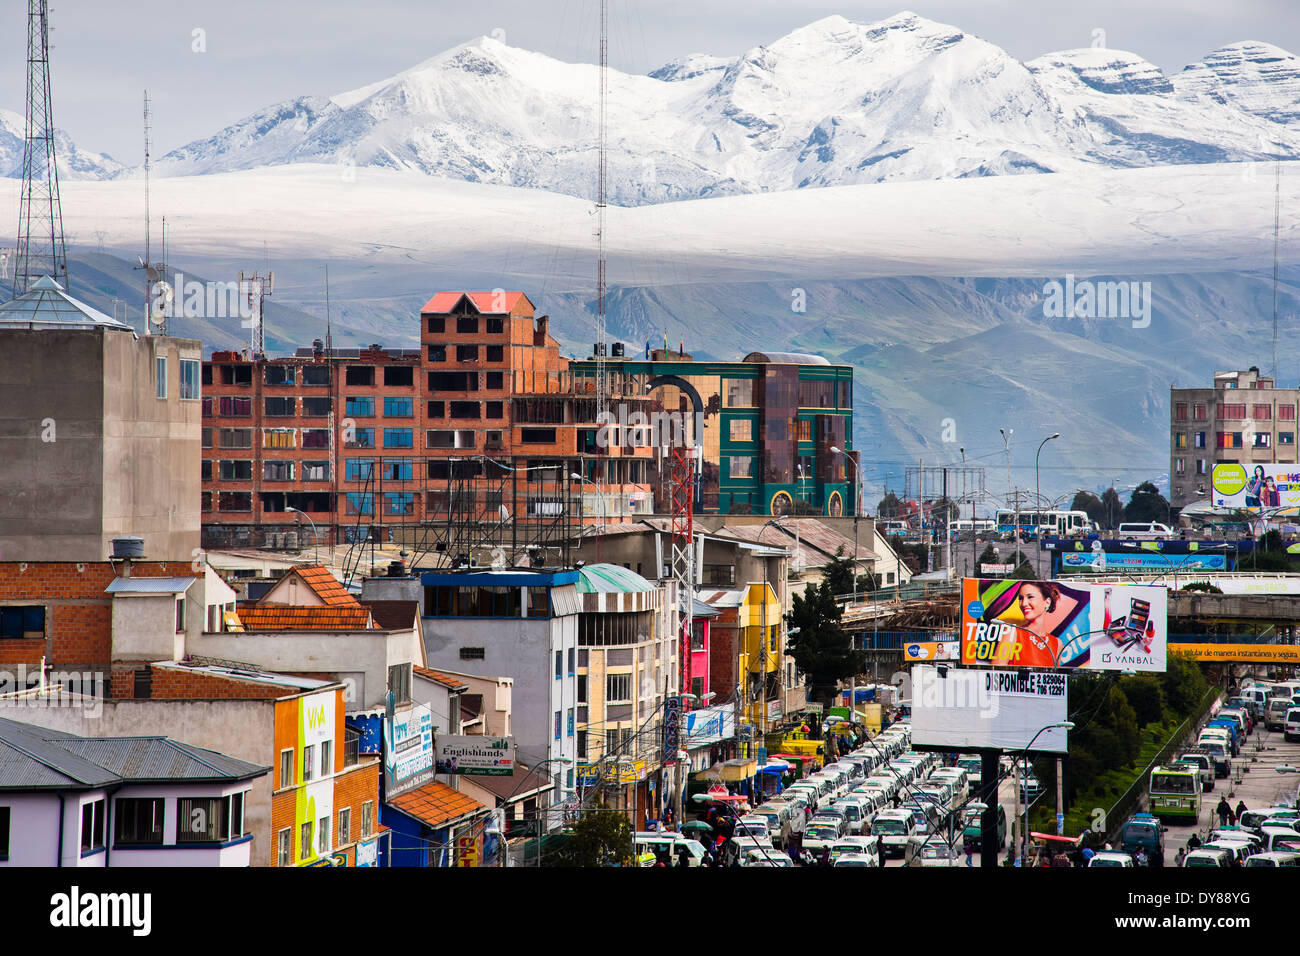 Les pics enneigés des Andes, avec une autoroute embouteillage dans l'avant-plan, sont observés dans la ville de El Alto, en Bolivie. Banque D'Images